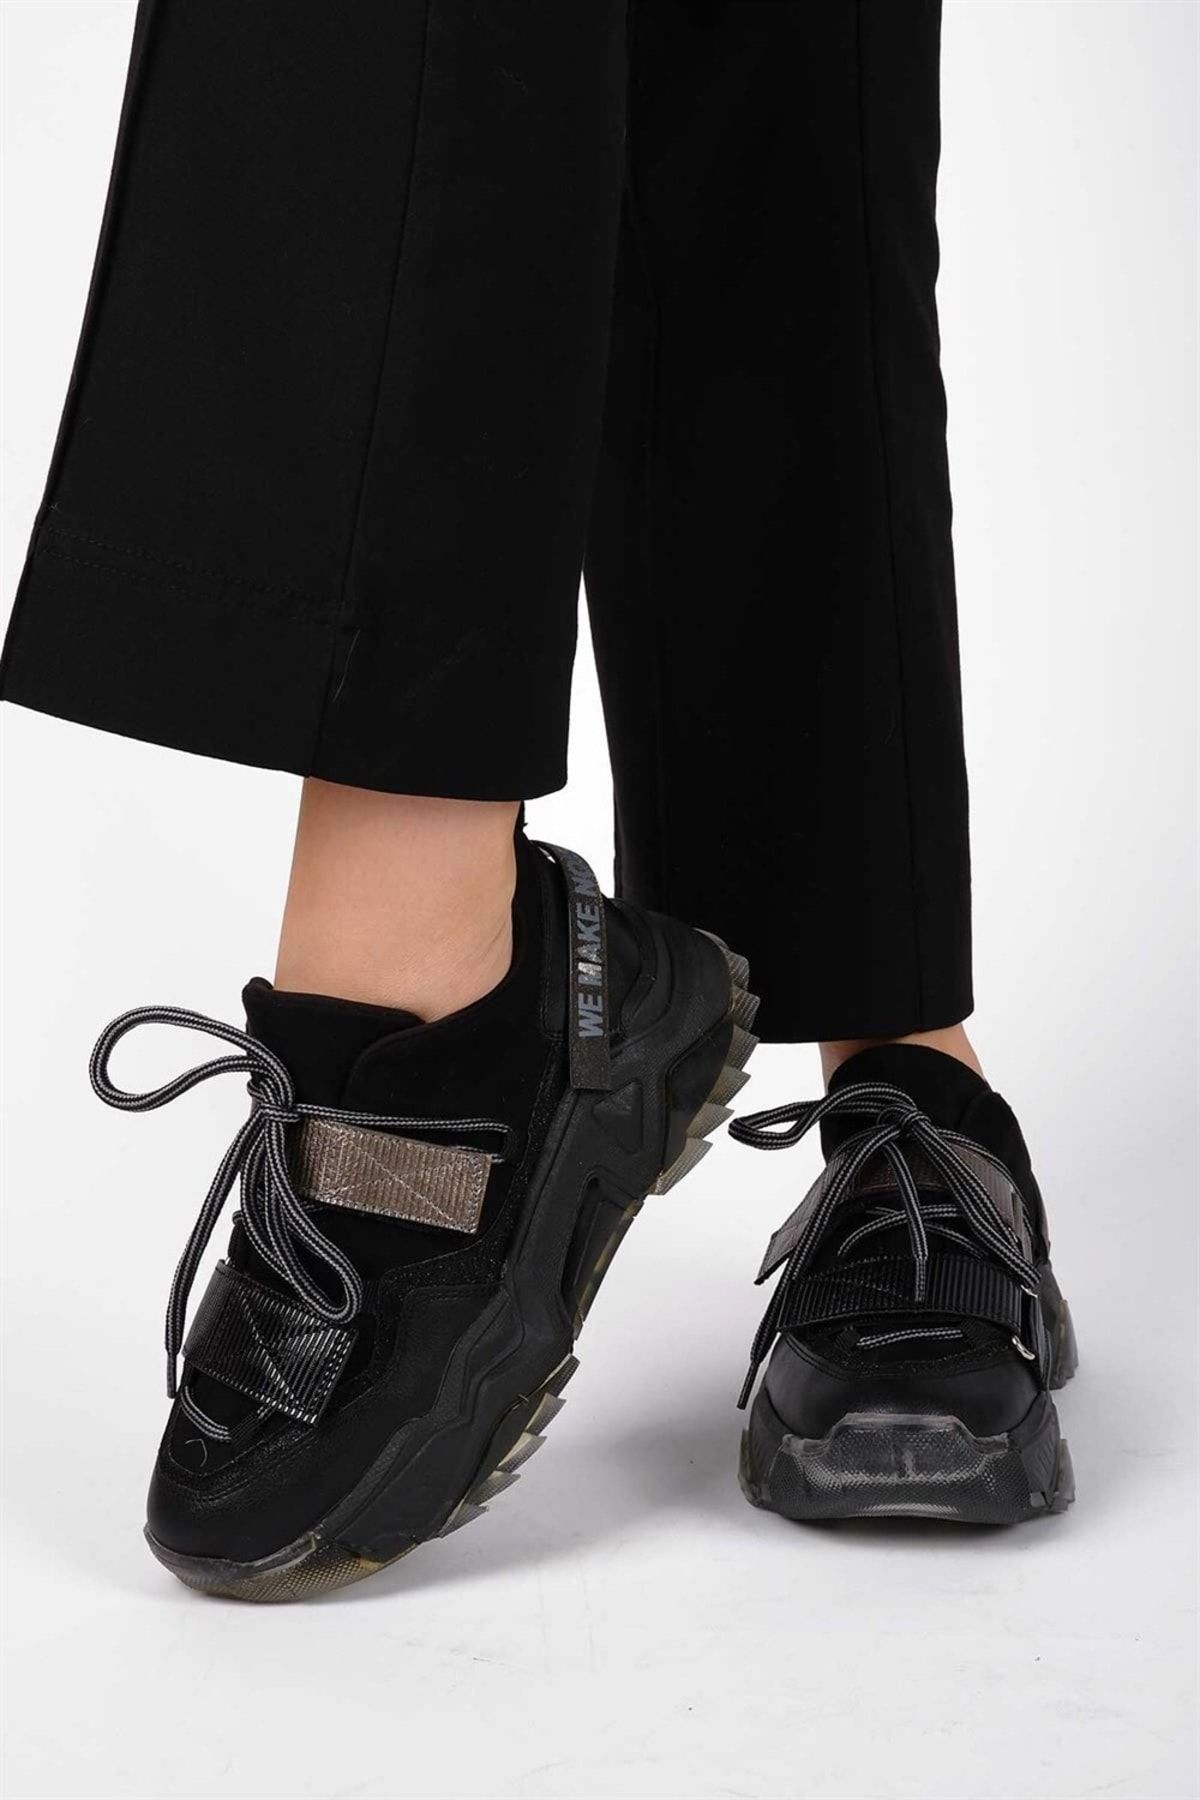 Tinka Bell Shoes Siyah - 65140 Kadın Spor Ayakkabı